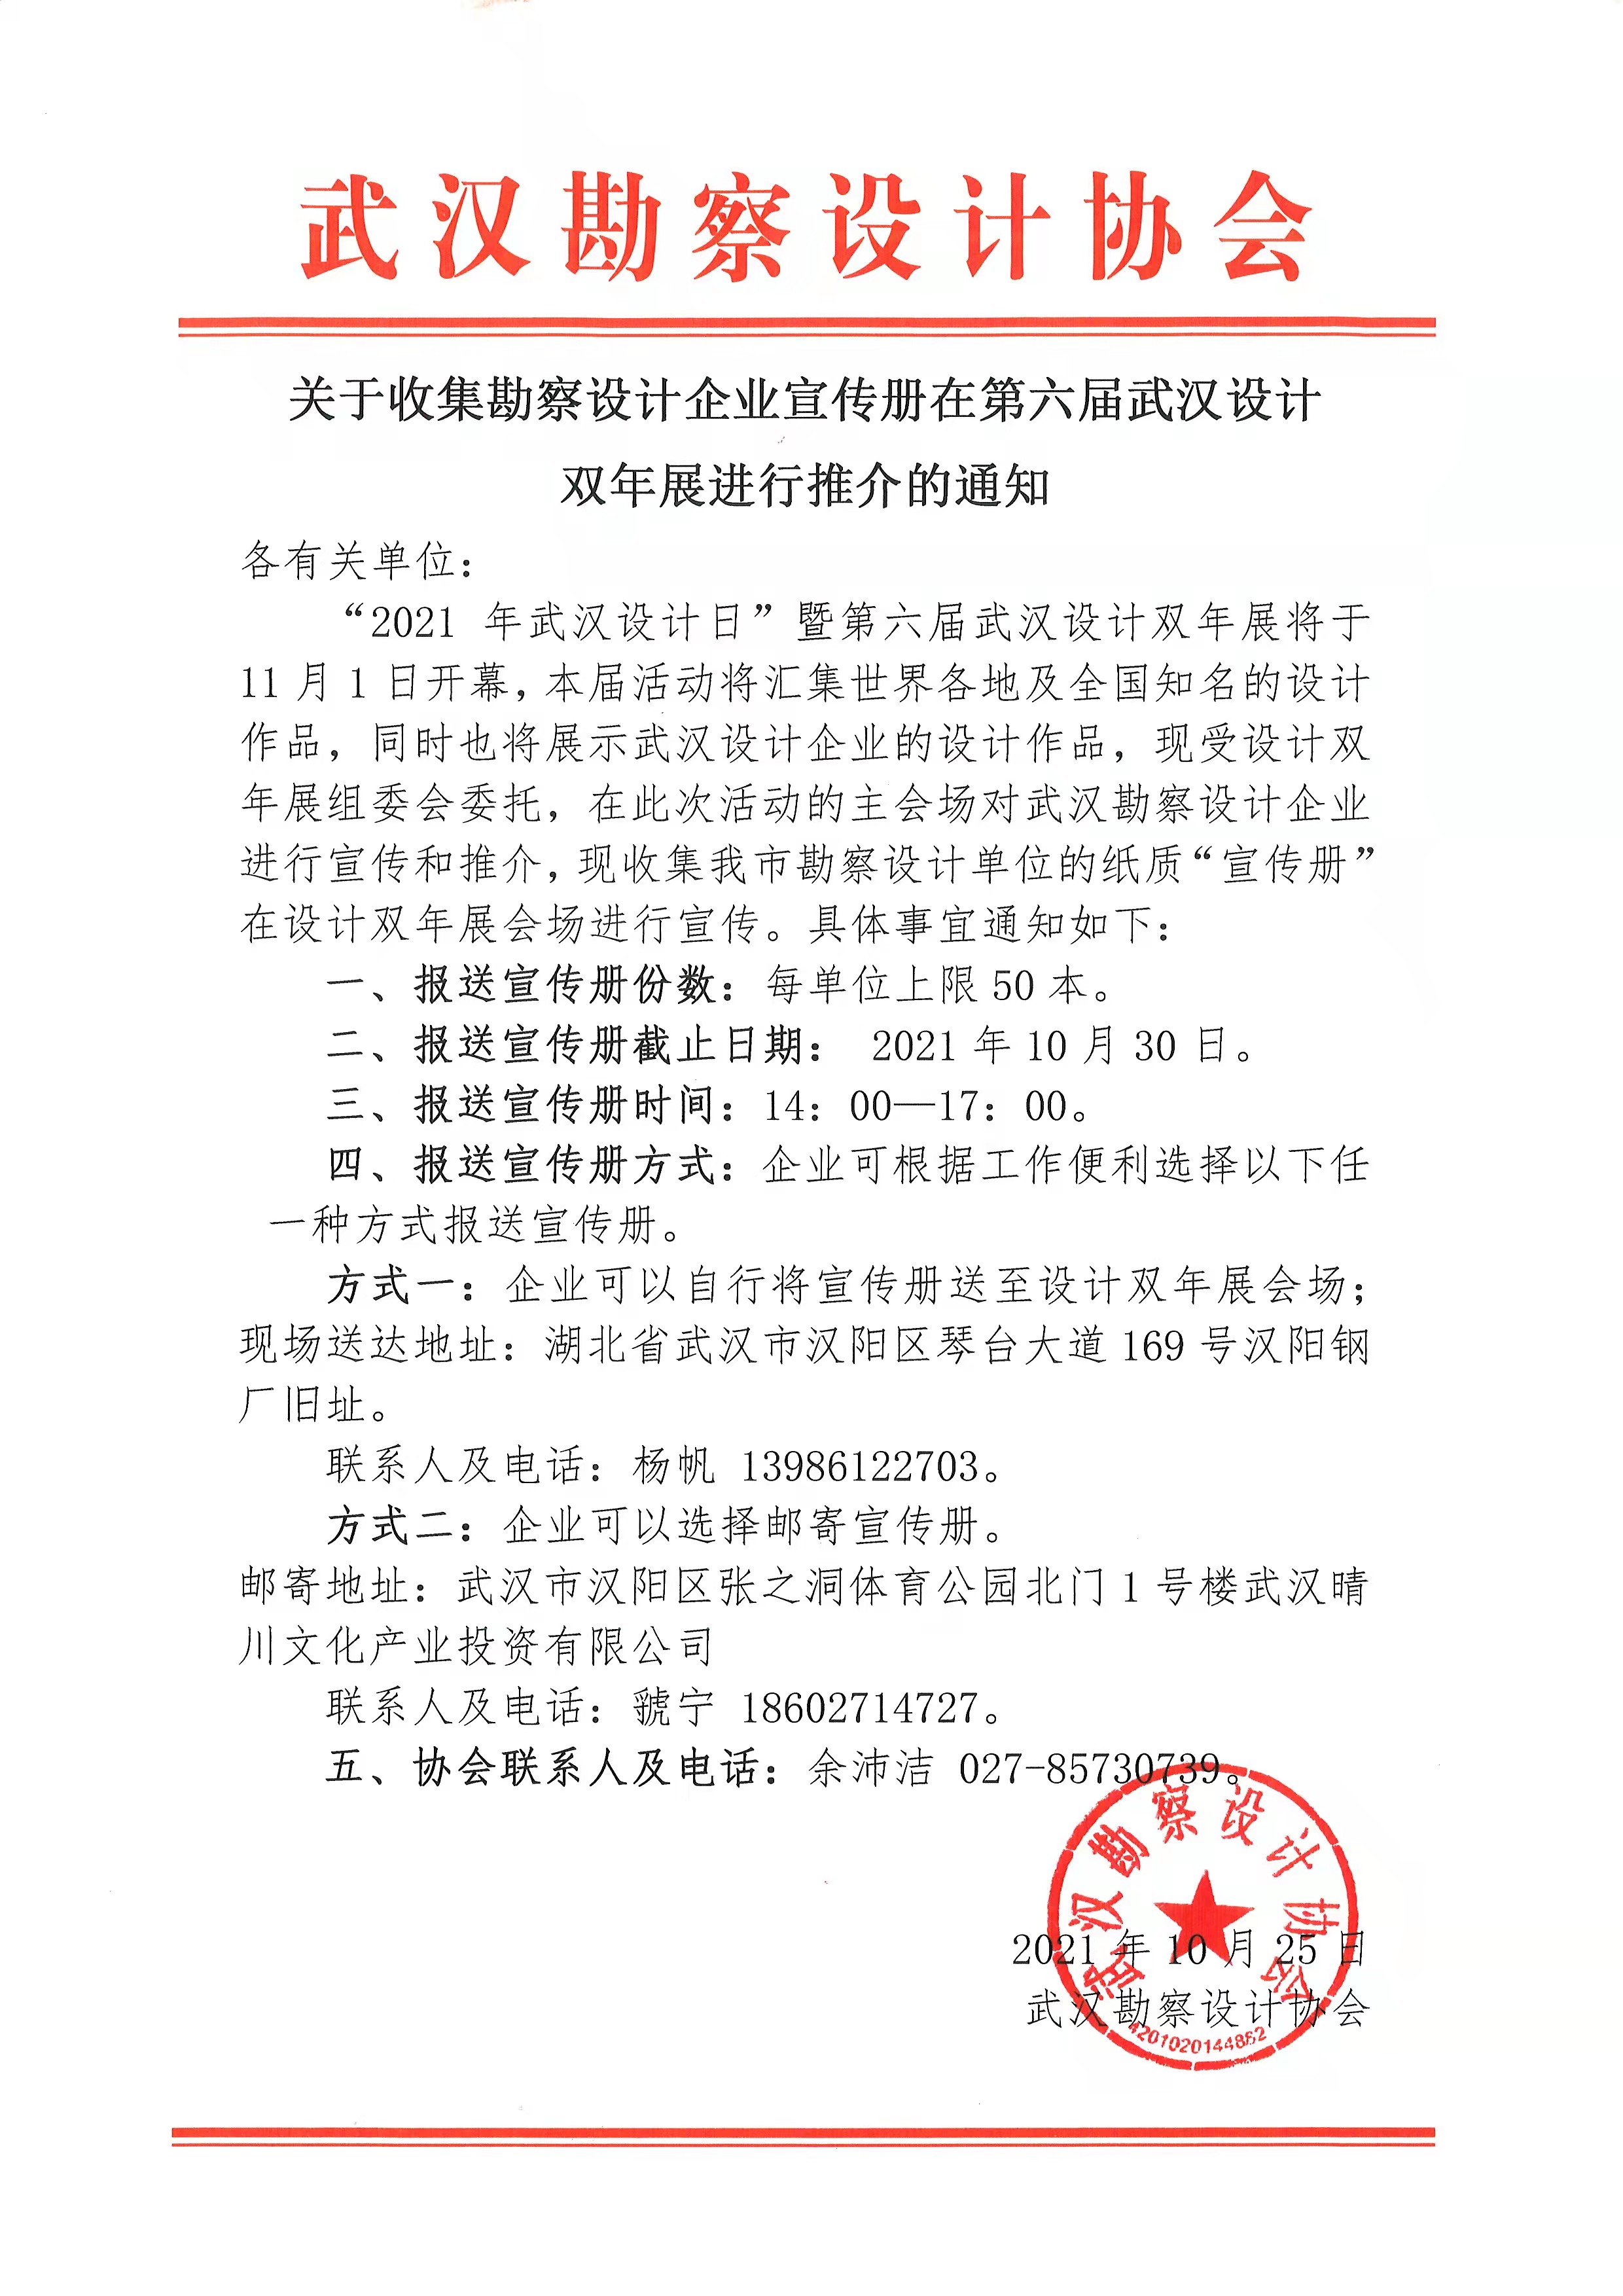 关于收集勘察设计企业宣传册在第六届武汉设计双年展进行推介的通知